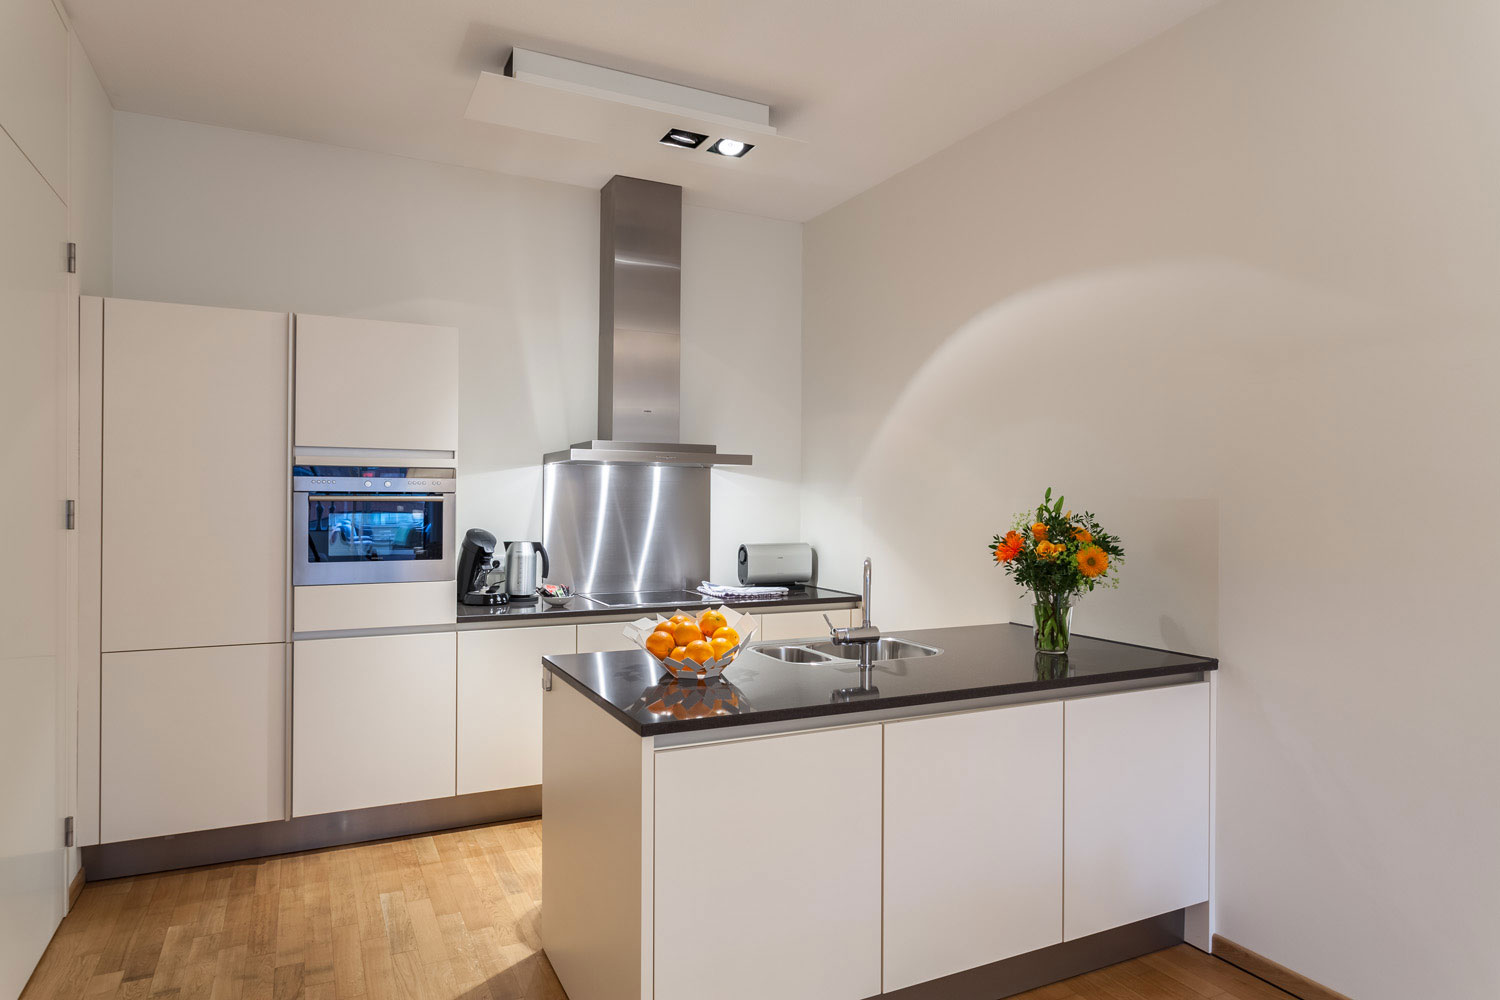 Omdesign av kjøkkenet i stil med minimalisme